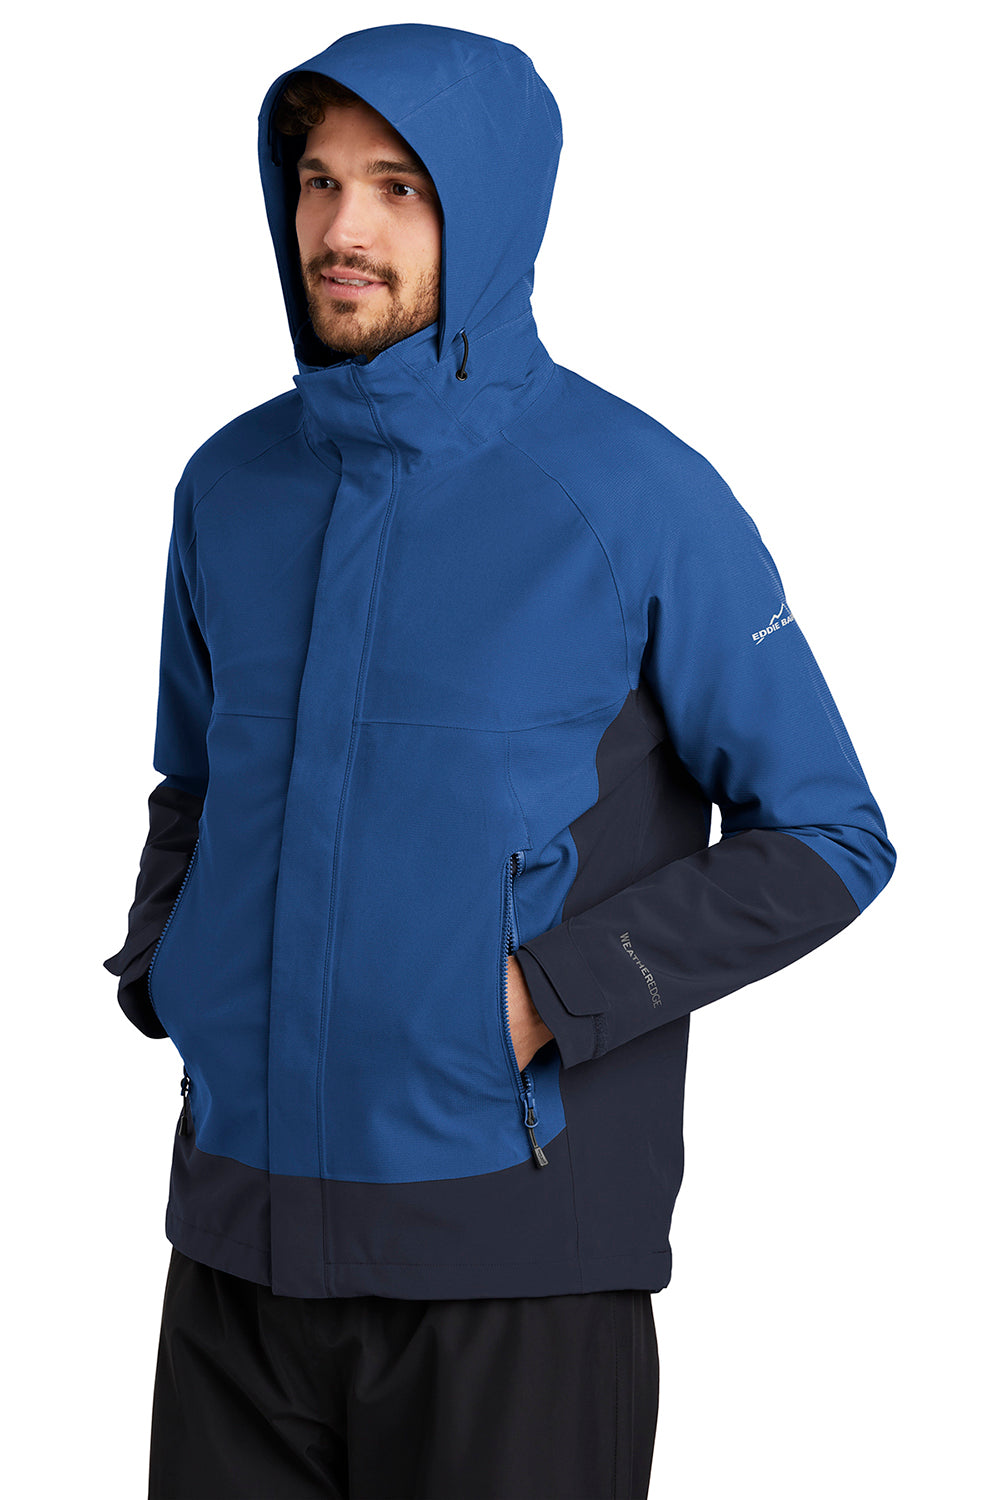 Eddie Bauer EB558 Mens WeatherEdge Waterproof Full Zip Hooded Jacket Cobalt Blue Model 3Q